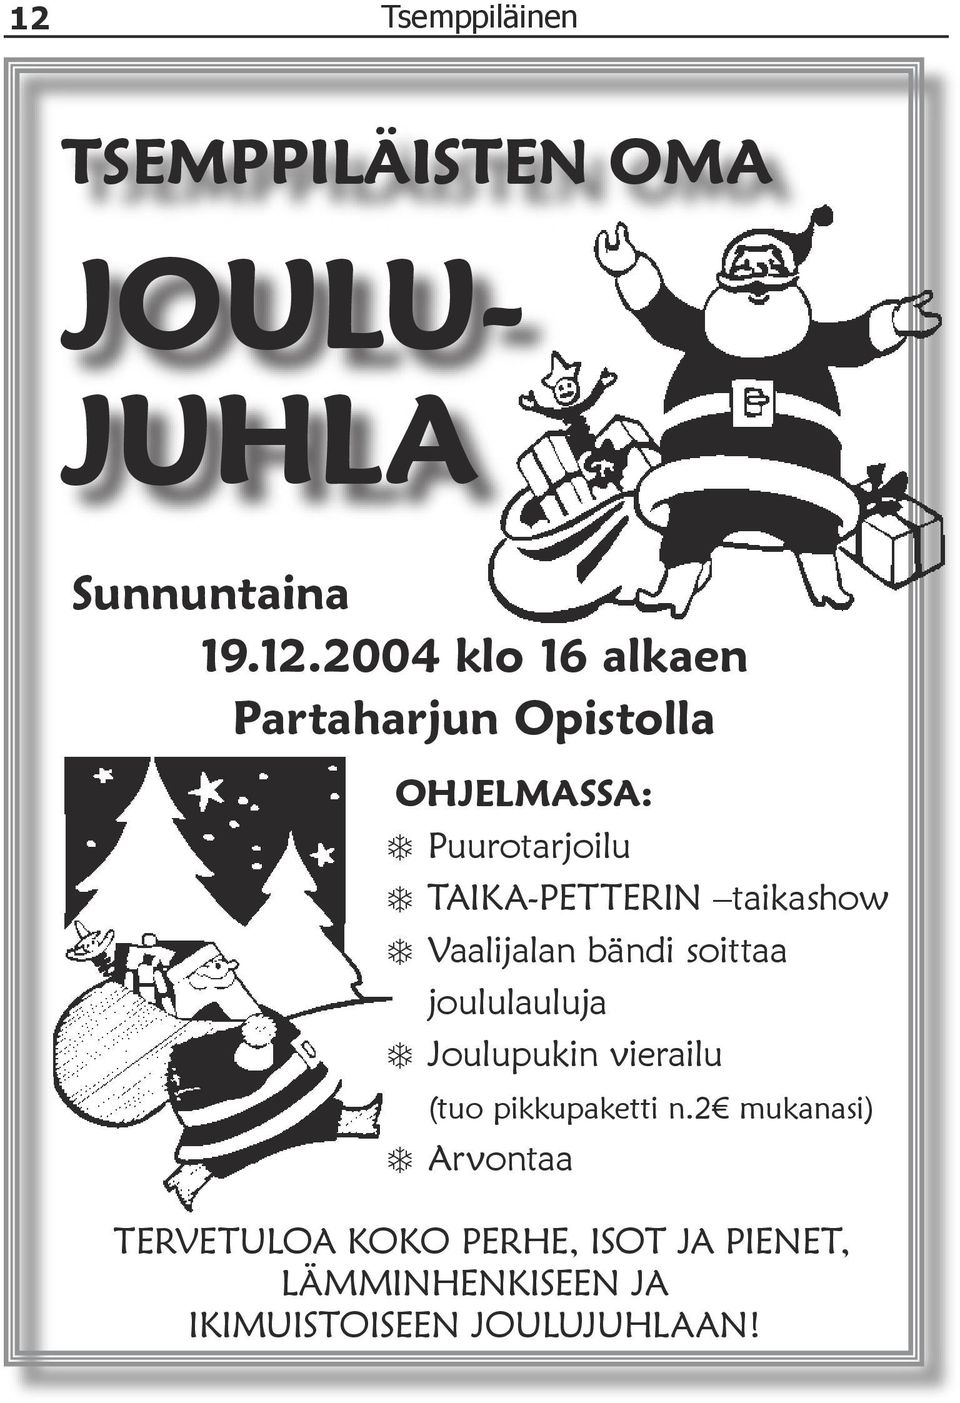 Vaalijalan bändi soittaa joululauluja Joulupukin vierailu (tuo pikkupaketti n.